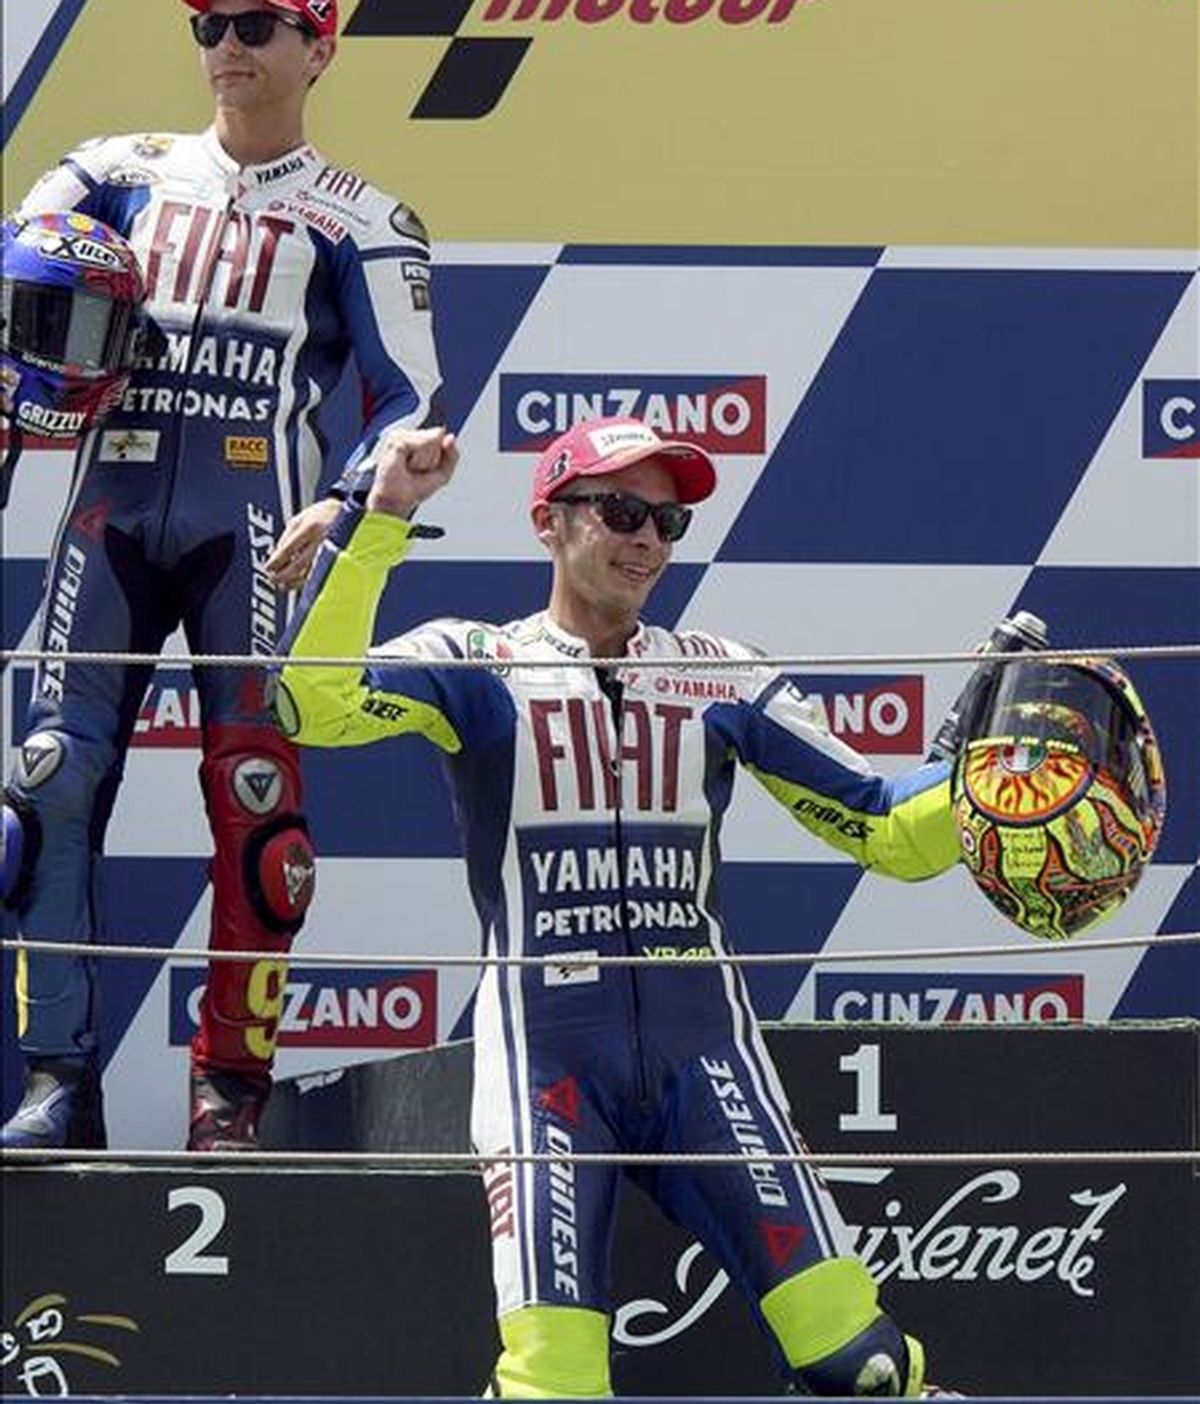 El piloto italiano de Moto GP Valentino Rossi (Fiat-Yamaha) celebra su victoria delante de su compañero de equipo, el piloto español Jorge Lorenzo (i), en el Gran Premio de Catalunya de motociclismo disputado en el Circuito de Montmeló (Barcelona). EFE